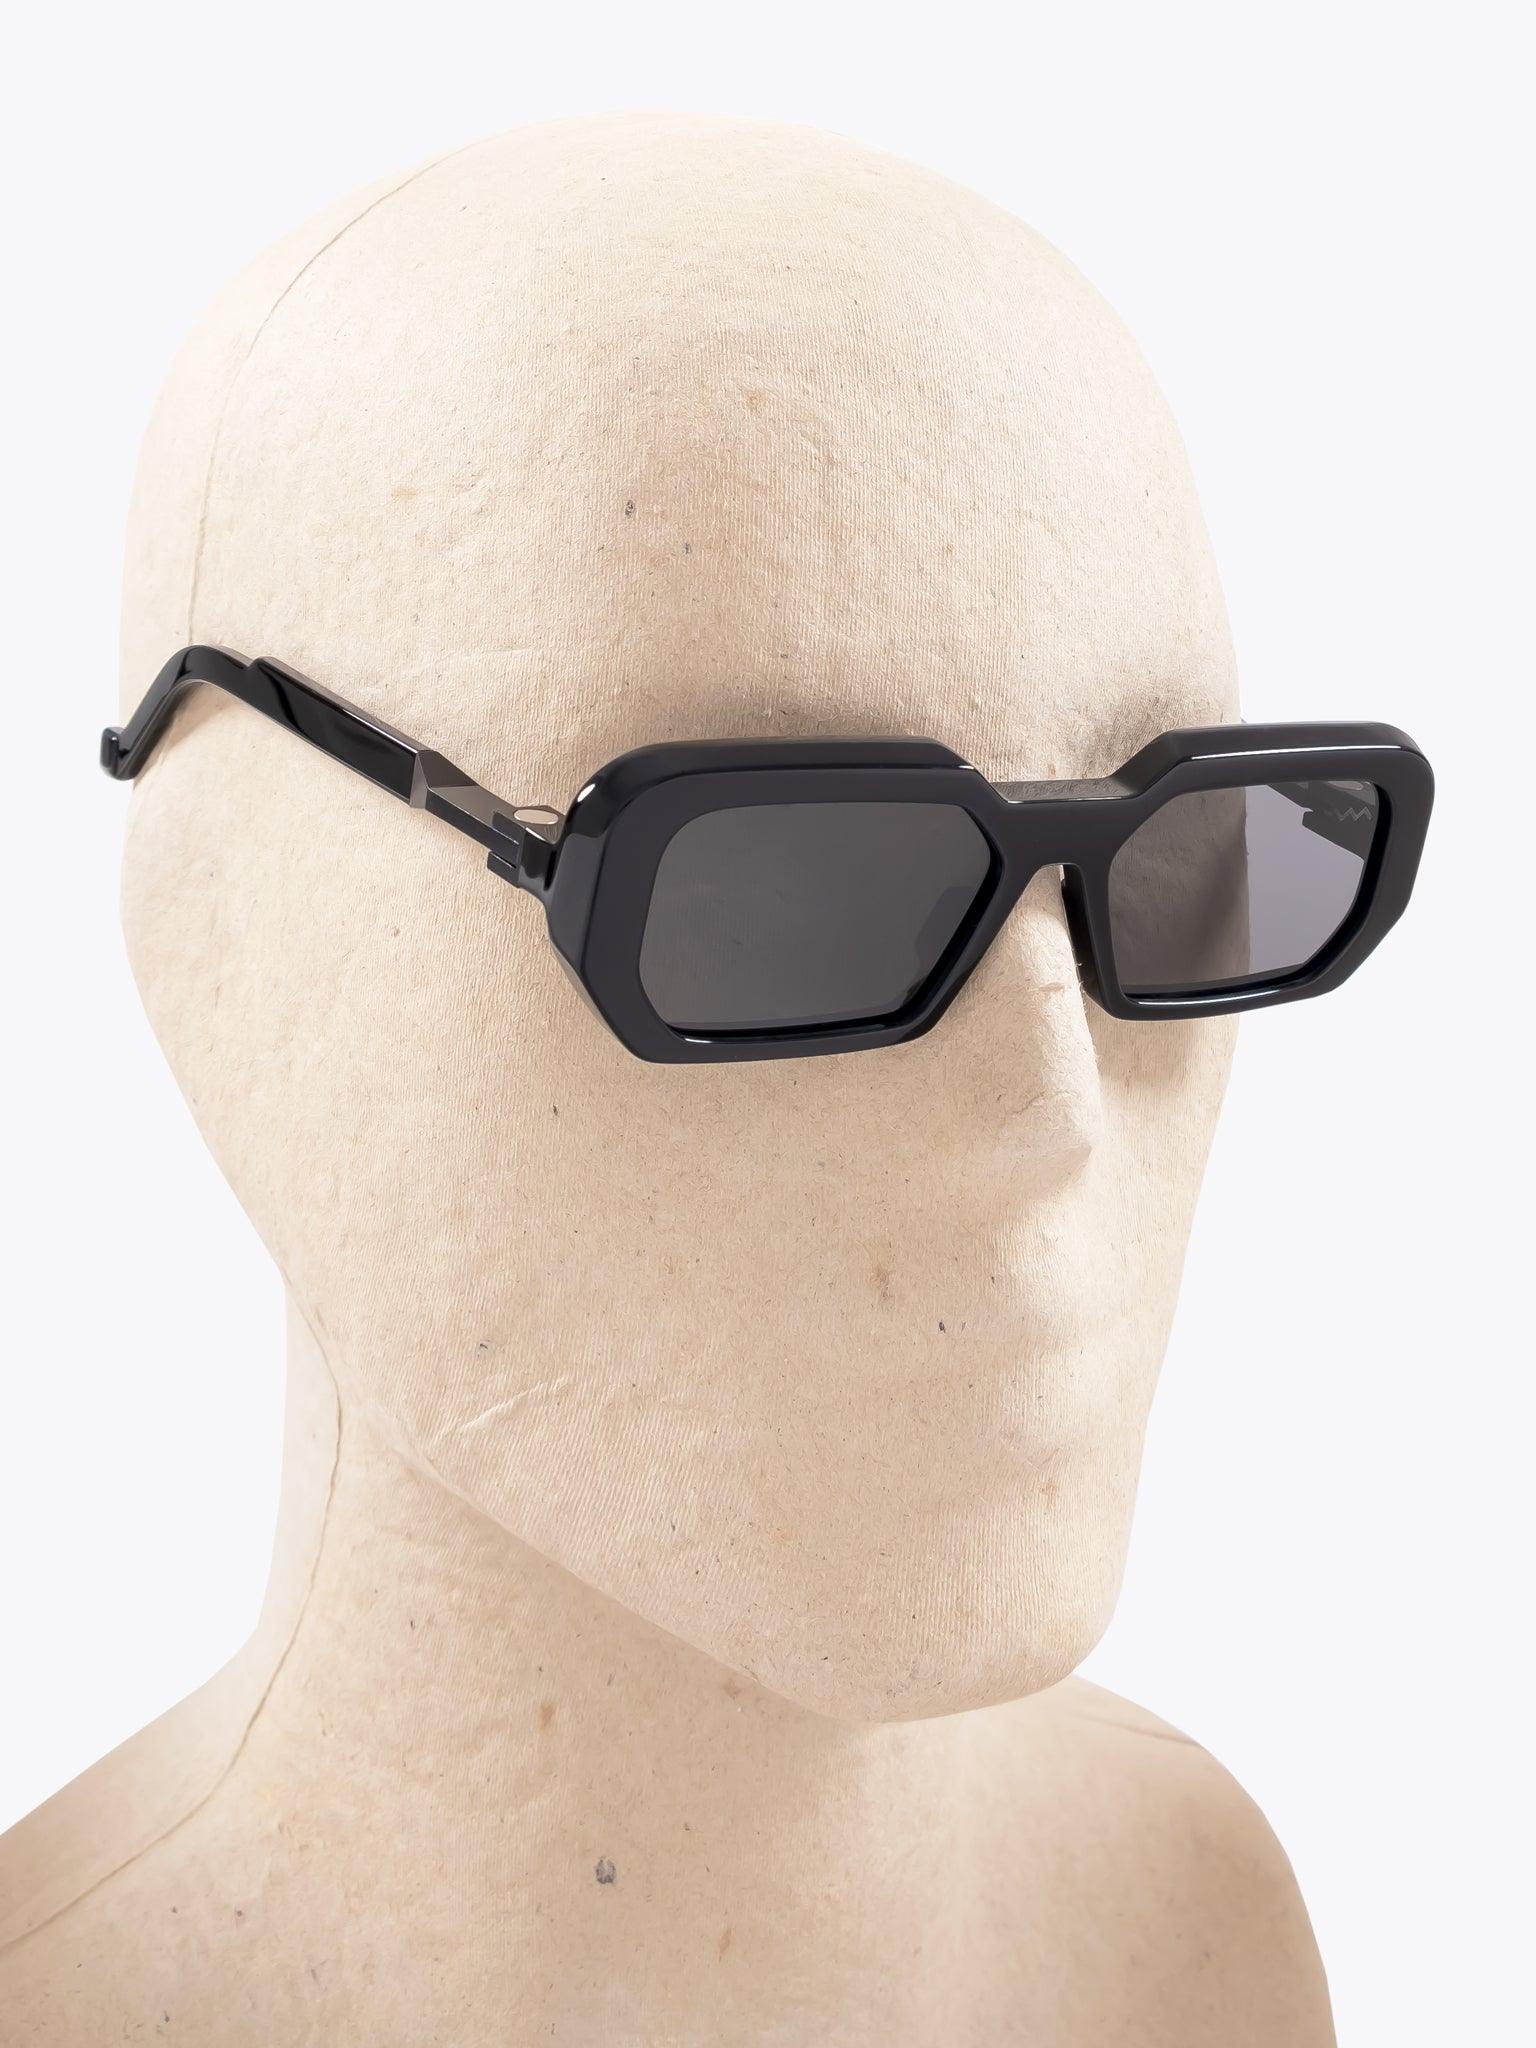 Vava Eyewear WL0052 Black Sunglasses